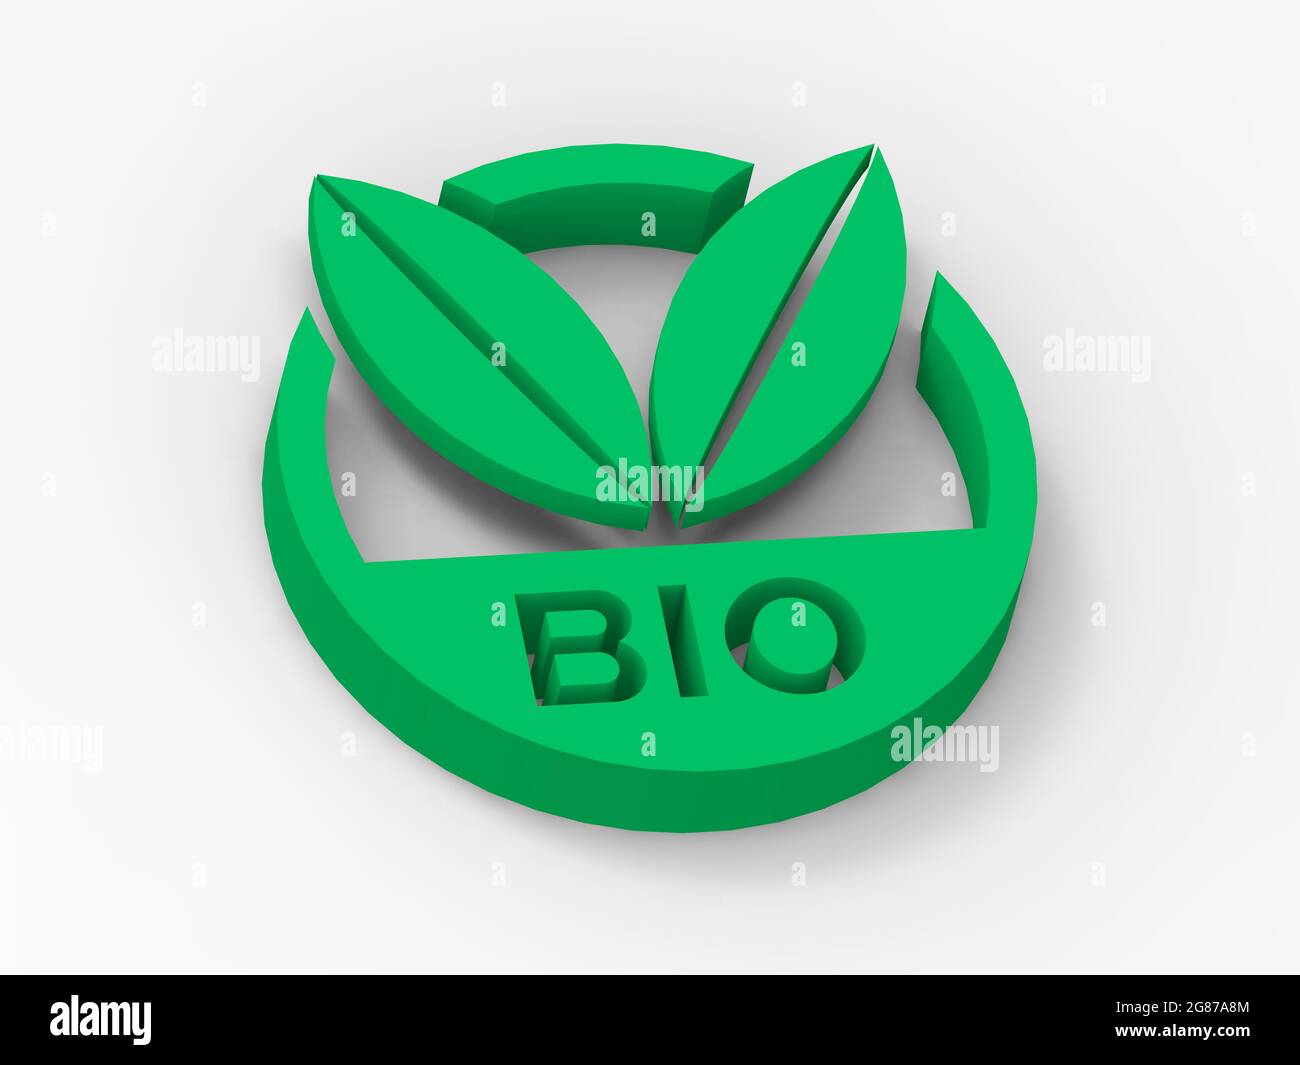 Icona 3D verde e rotonda con due foglie, messaggio di bio, biologico, ecologico, sano stile di vita, conservazione dell'ambiente, sfondo bianco Foto Stock